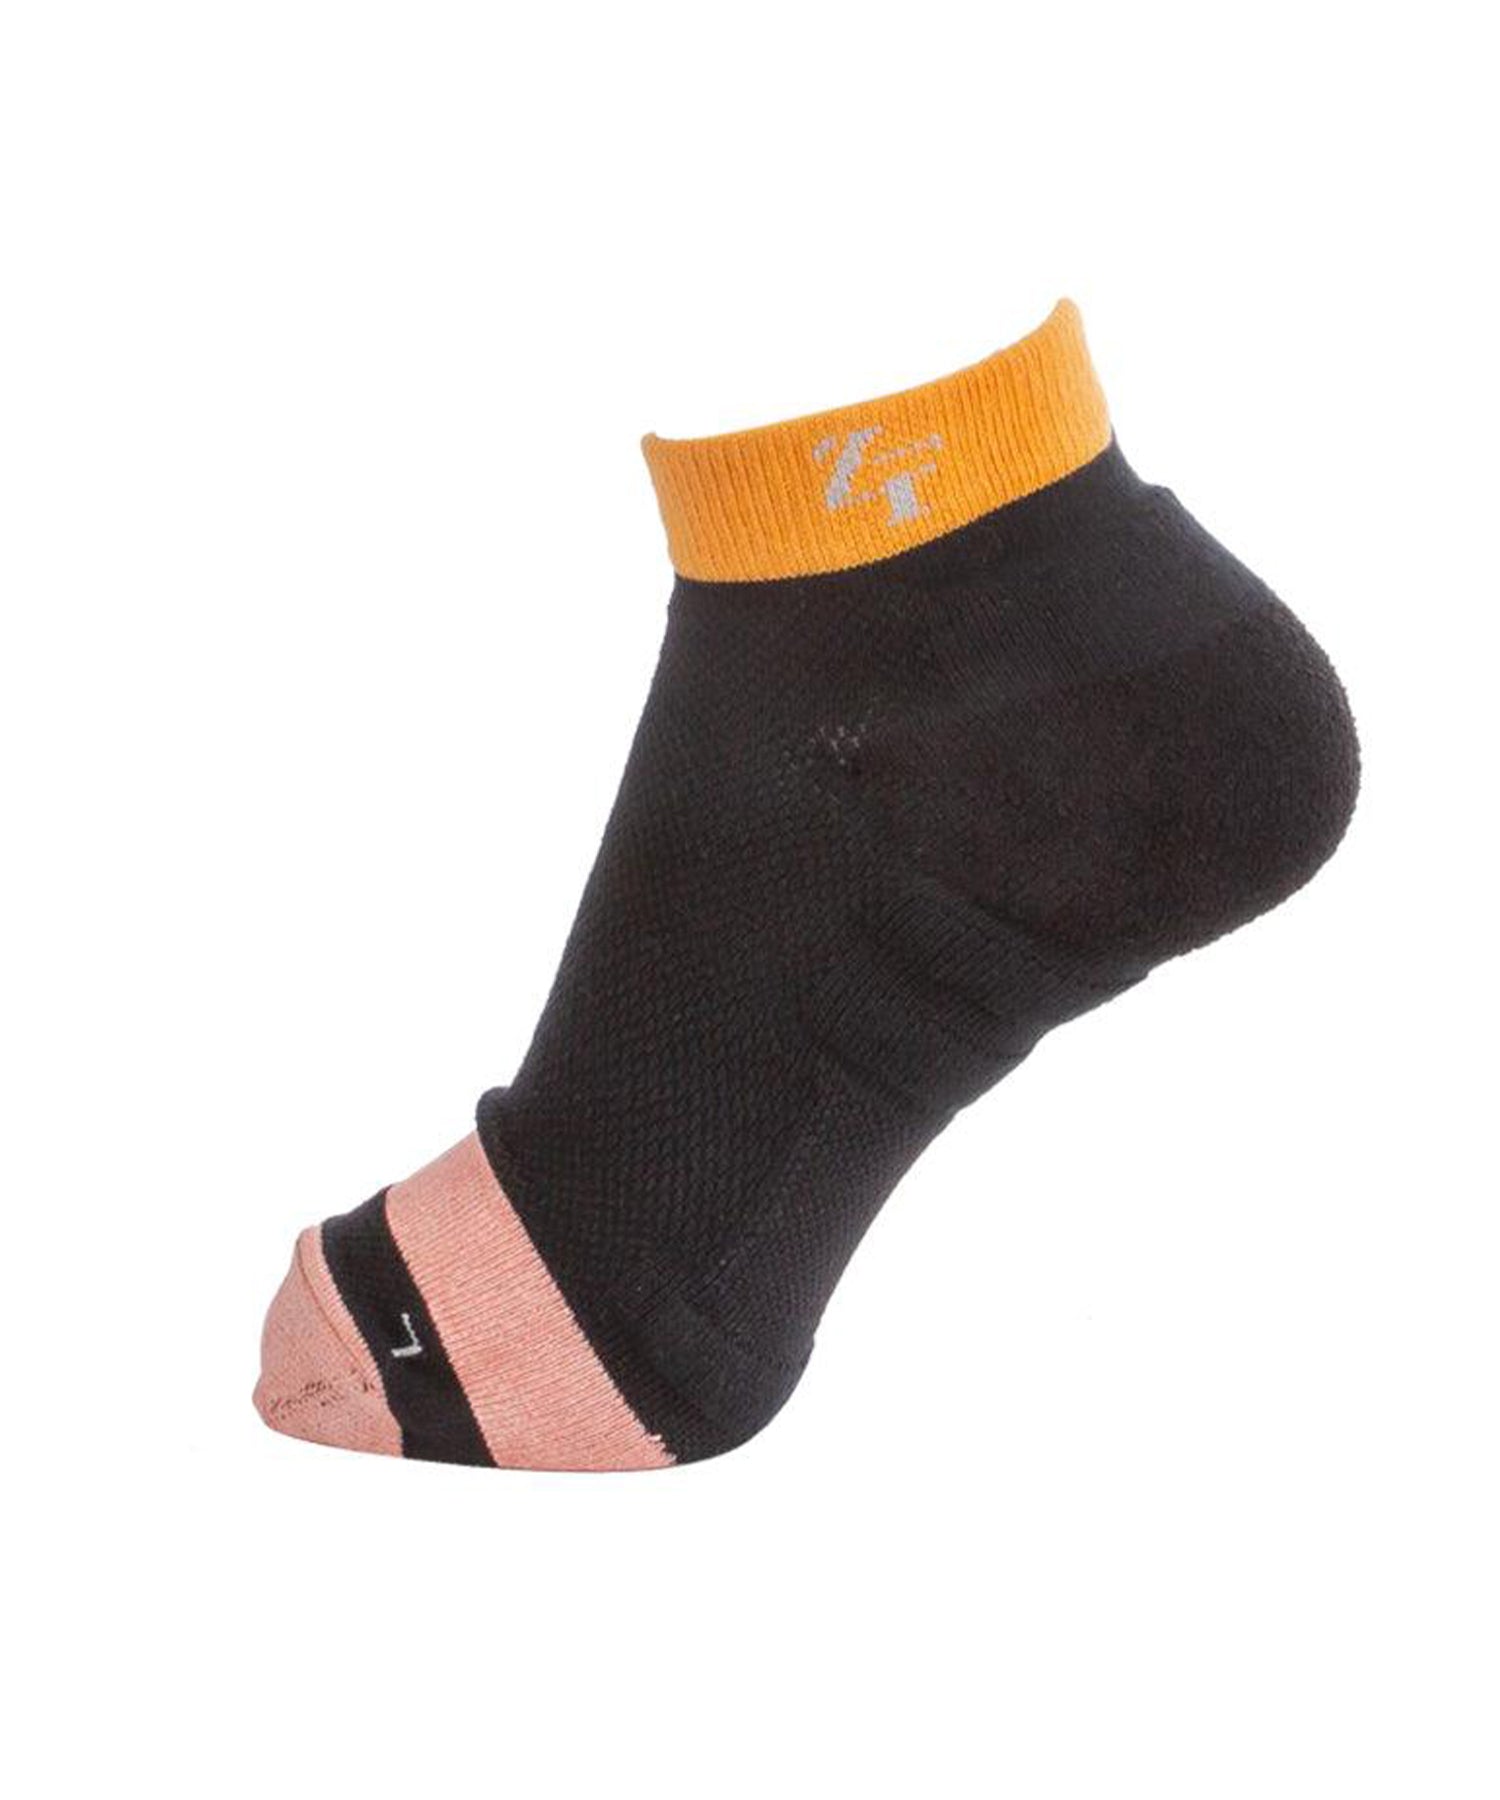 Nano hybrid socks short